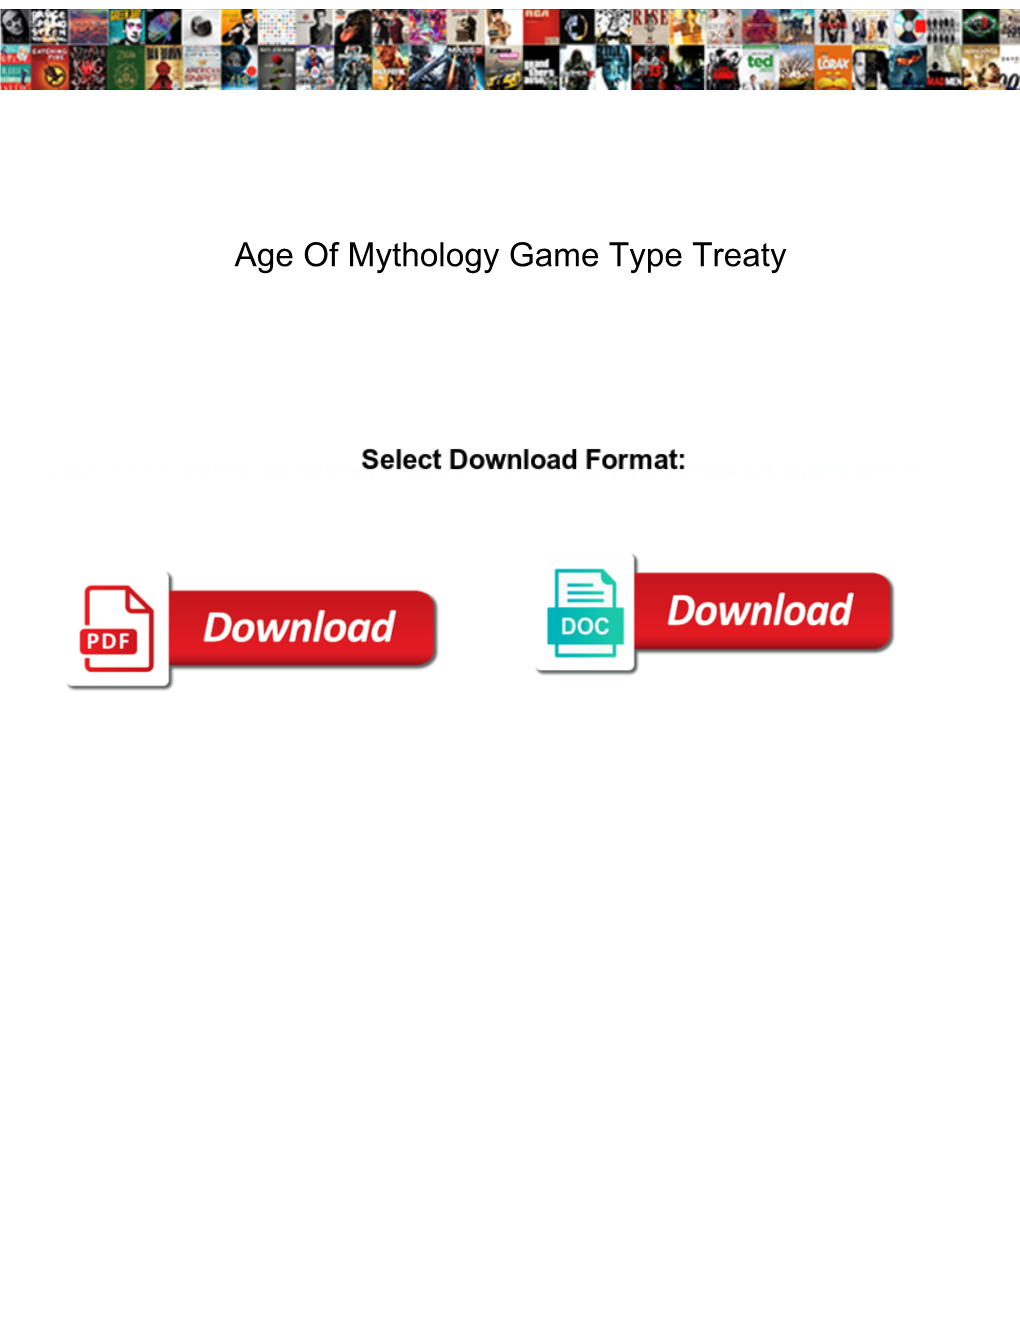 Age of Mythology Game Type Treaty